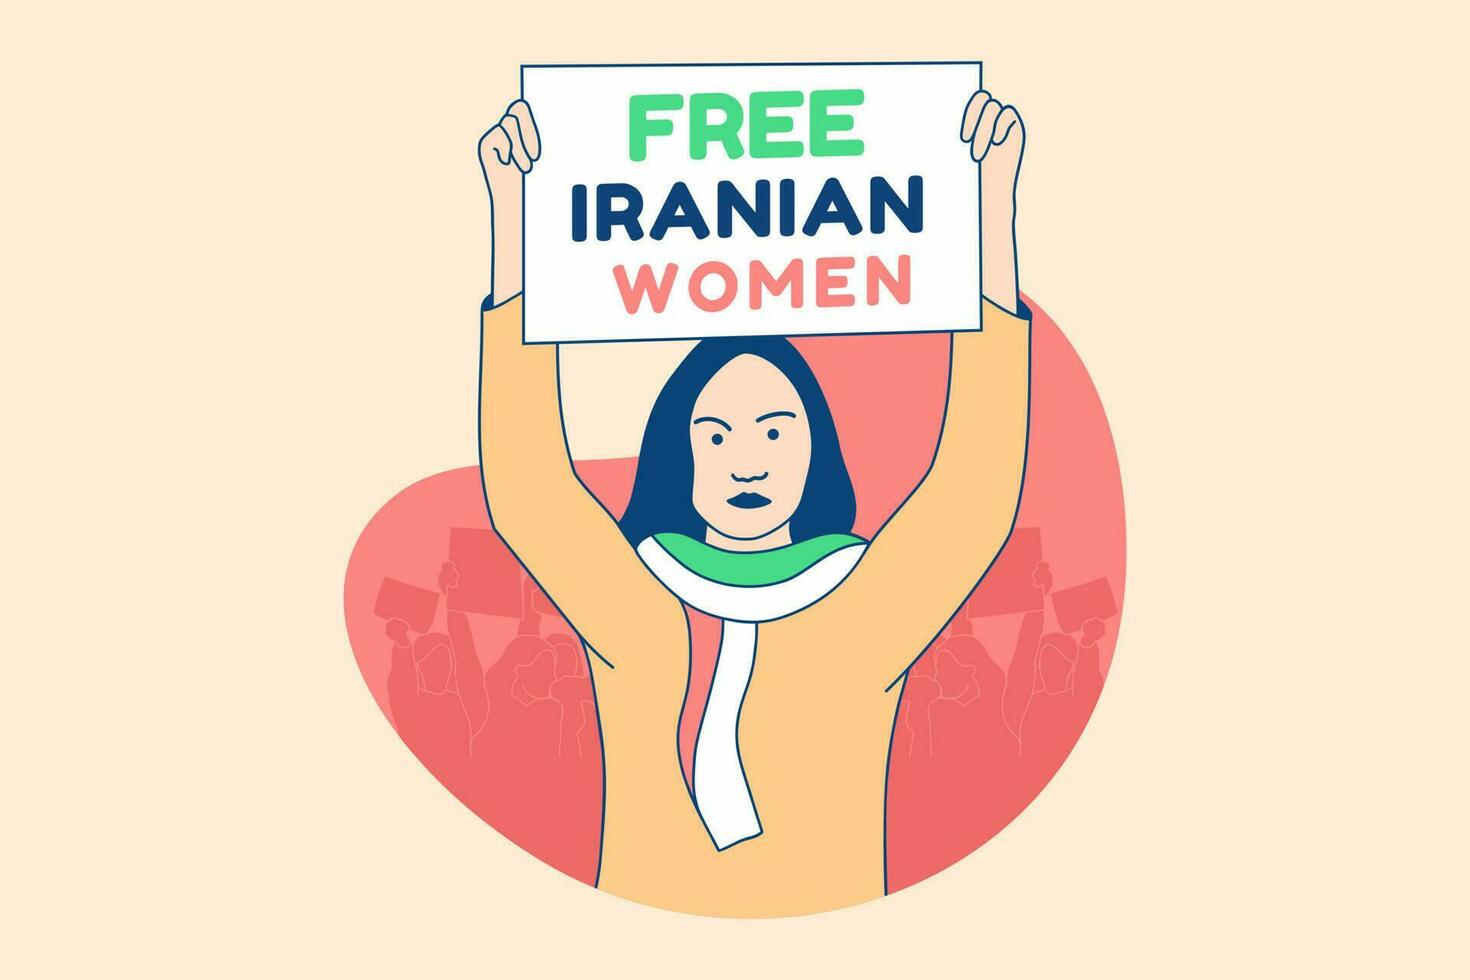 Illustrationen schöne iranische Demonstrantinnen kostenlos Gestaltungskonzept der iranischen Frauenkampagne vektor